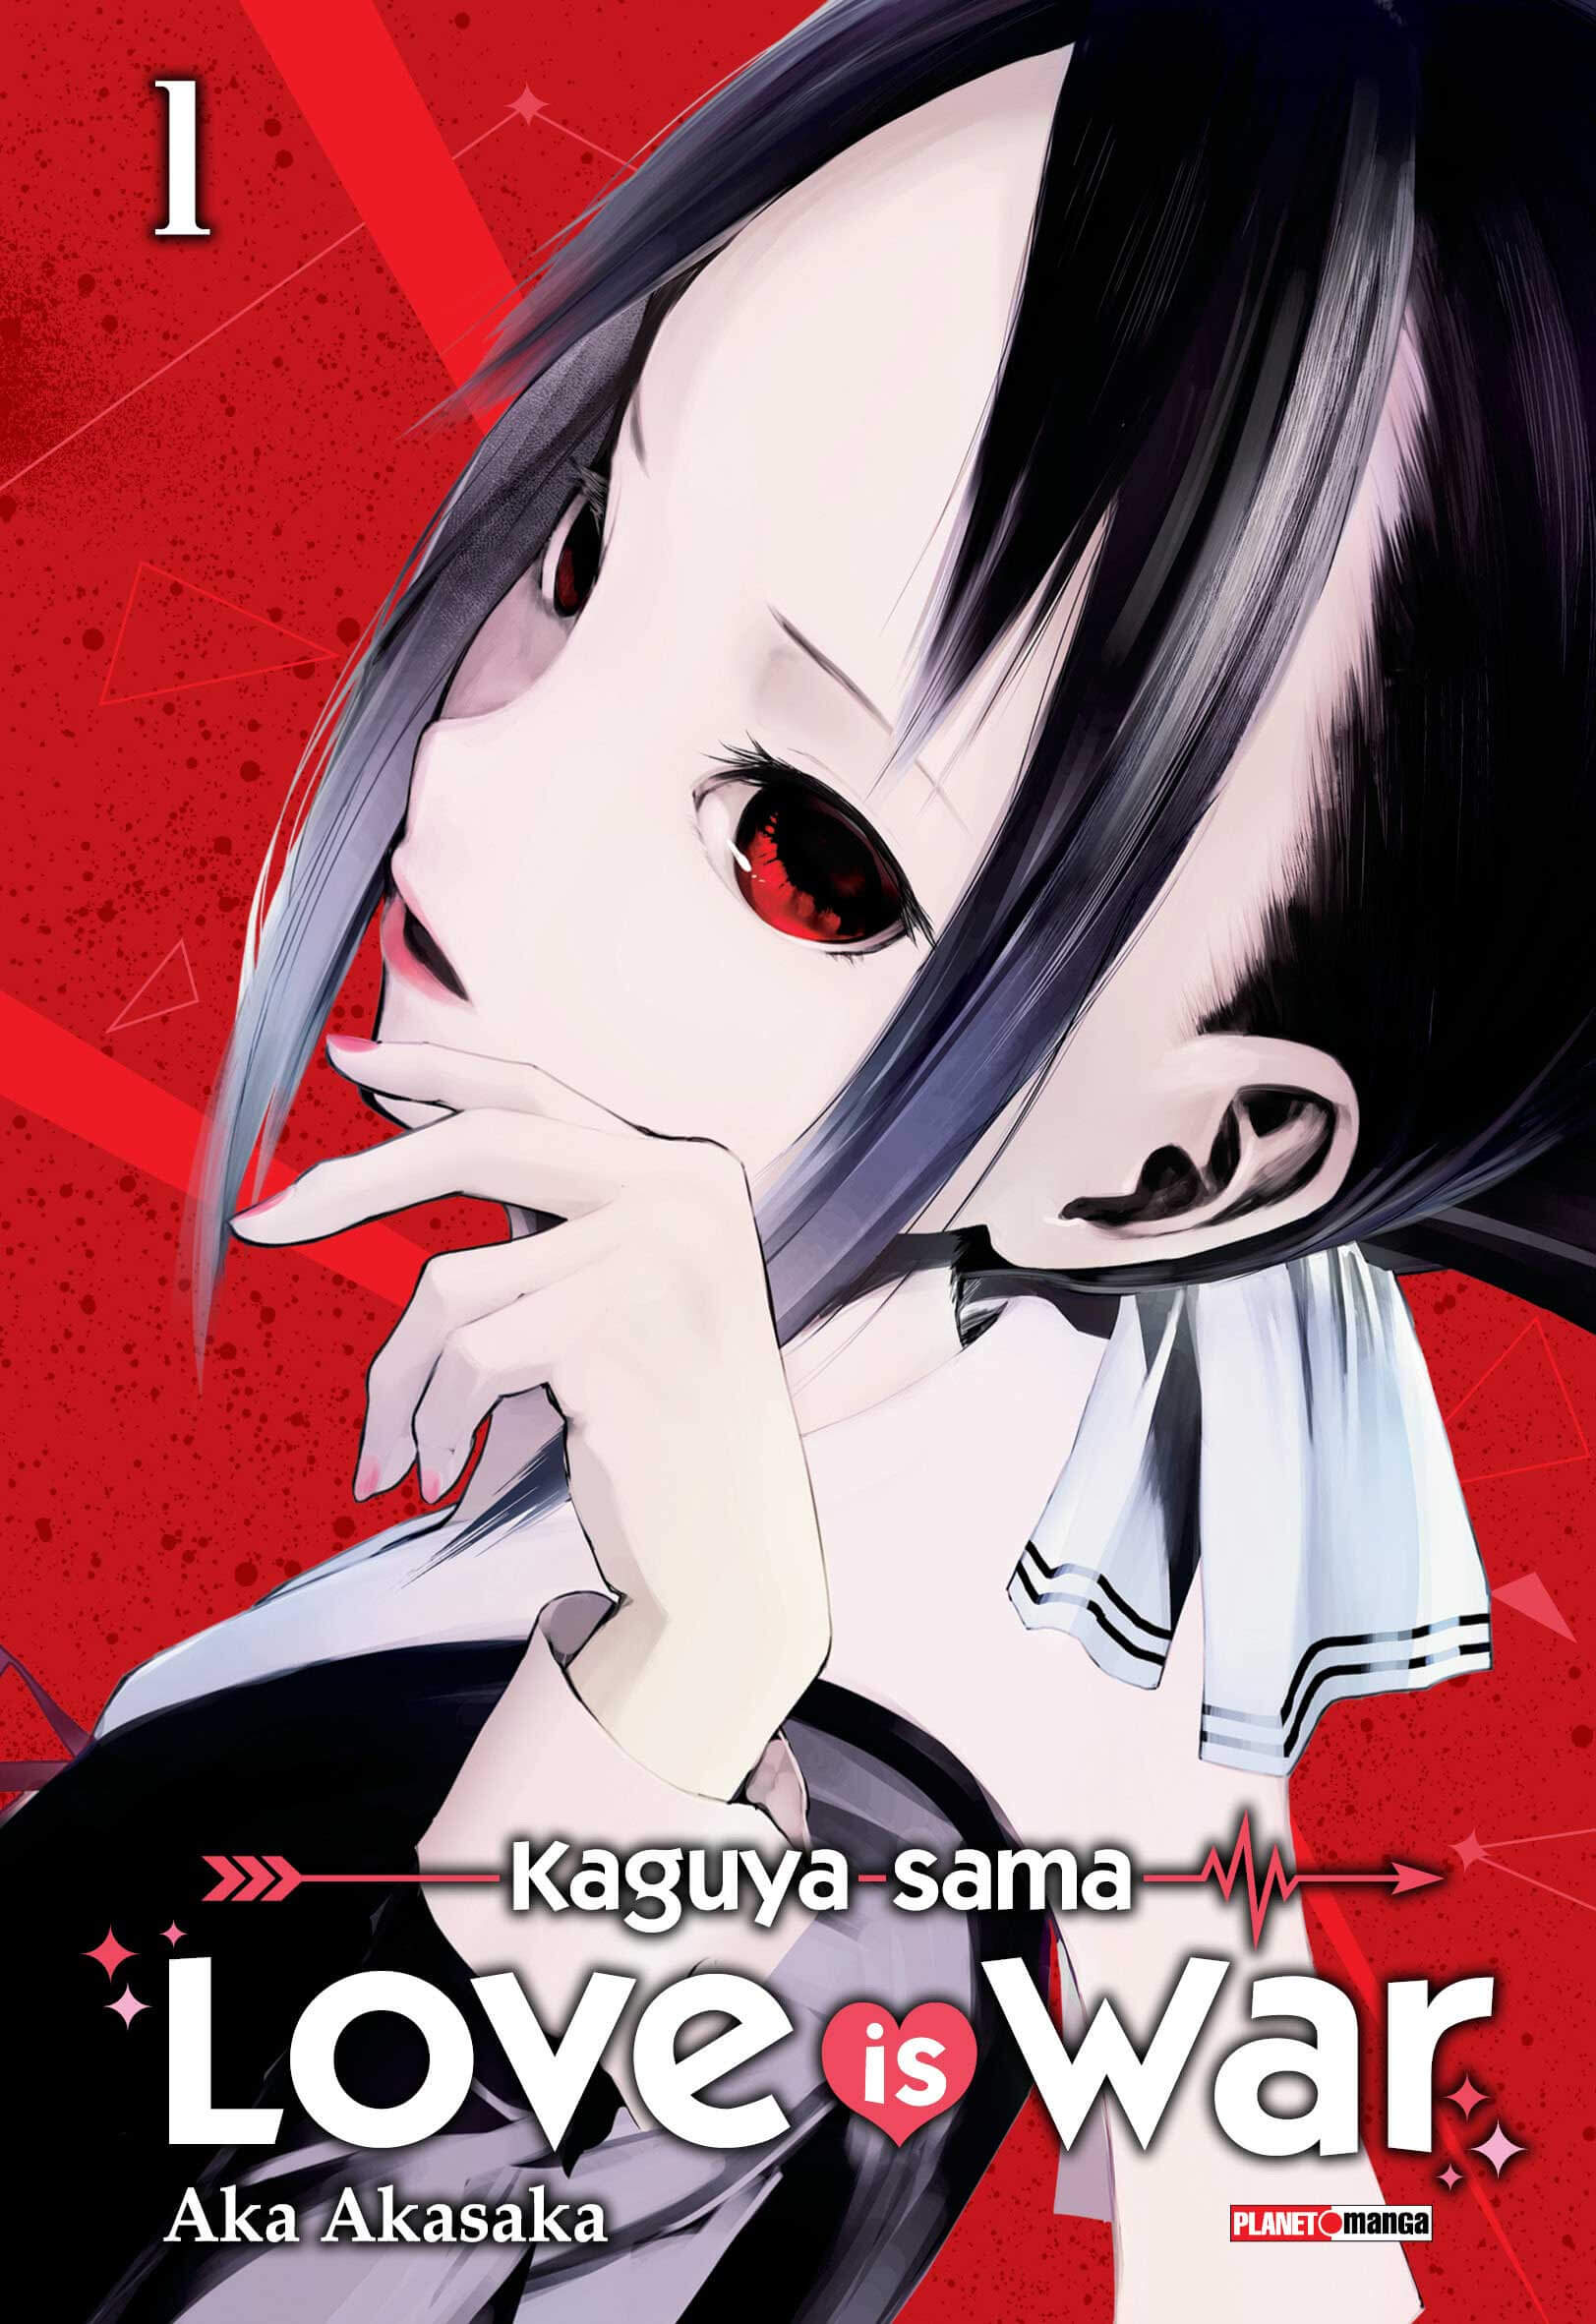 Kaguya-sama - Love is War